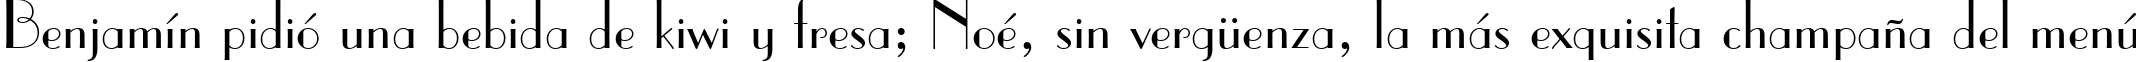 Пример написания шрифтом Parisian BT текста на испанском